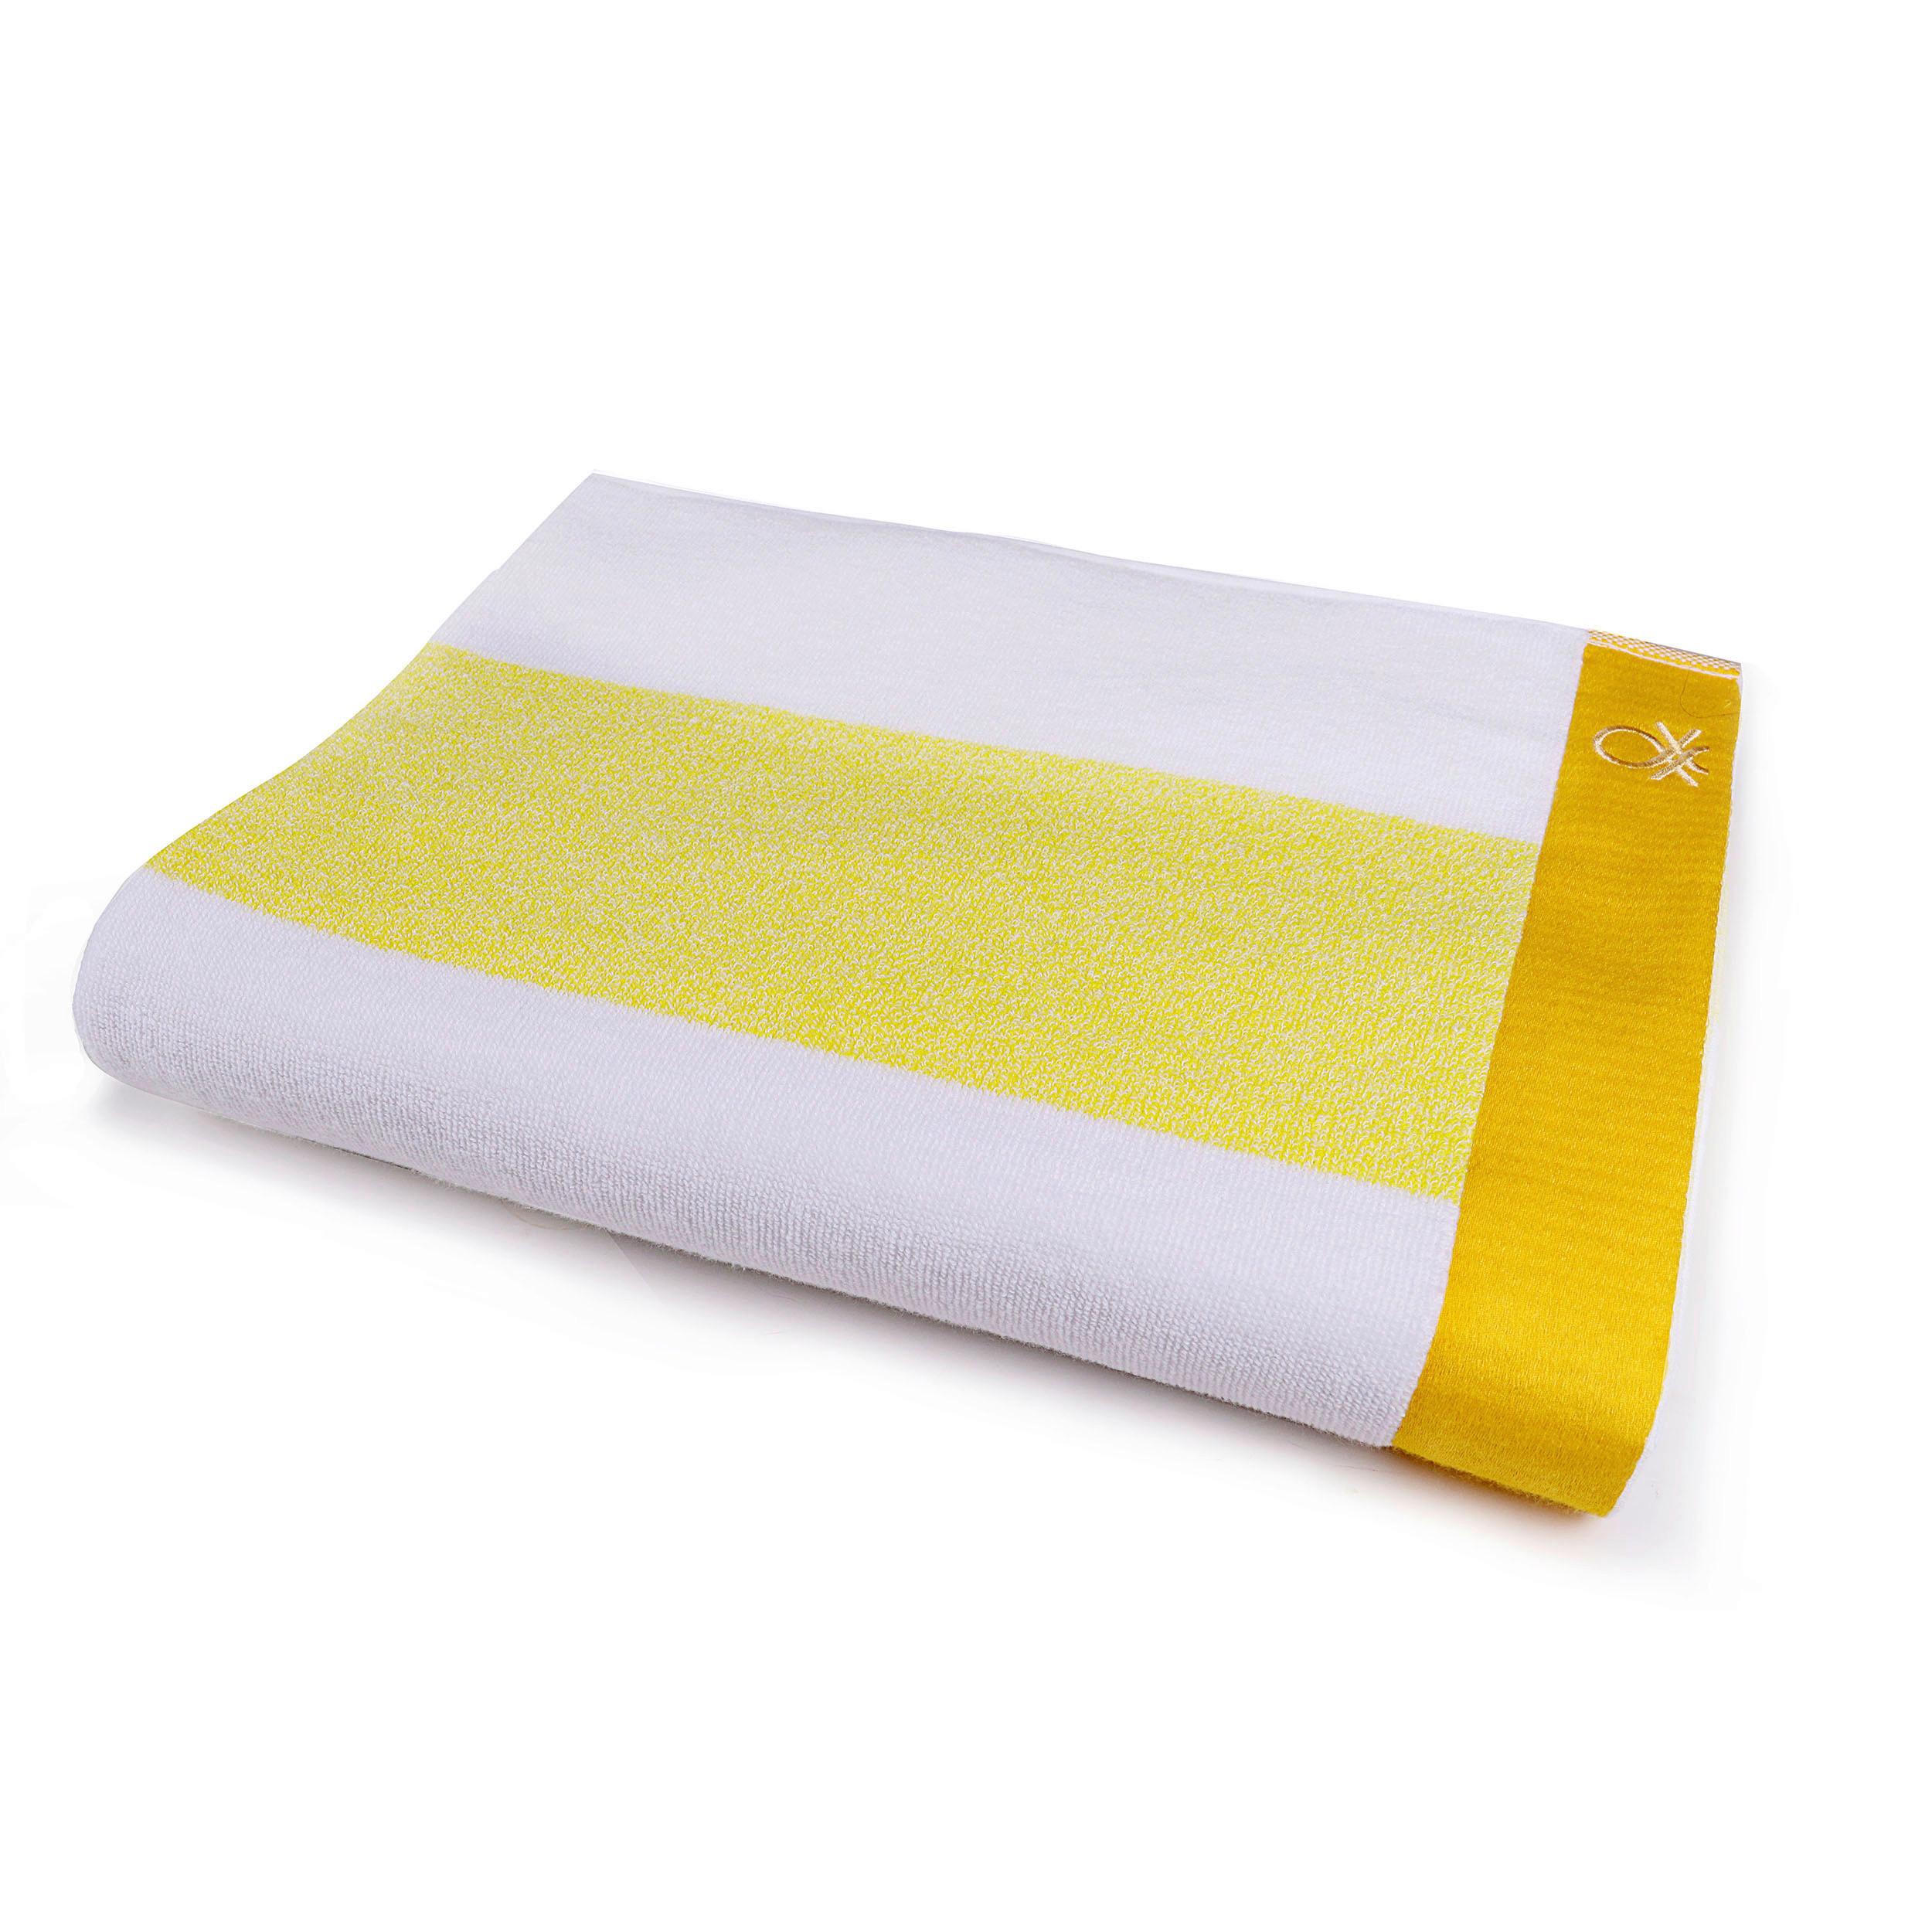 Strandtuch Baumwolle Gelb/ Weiß 90x160x1,5 cm